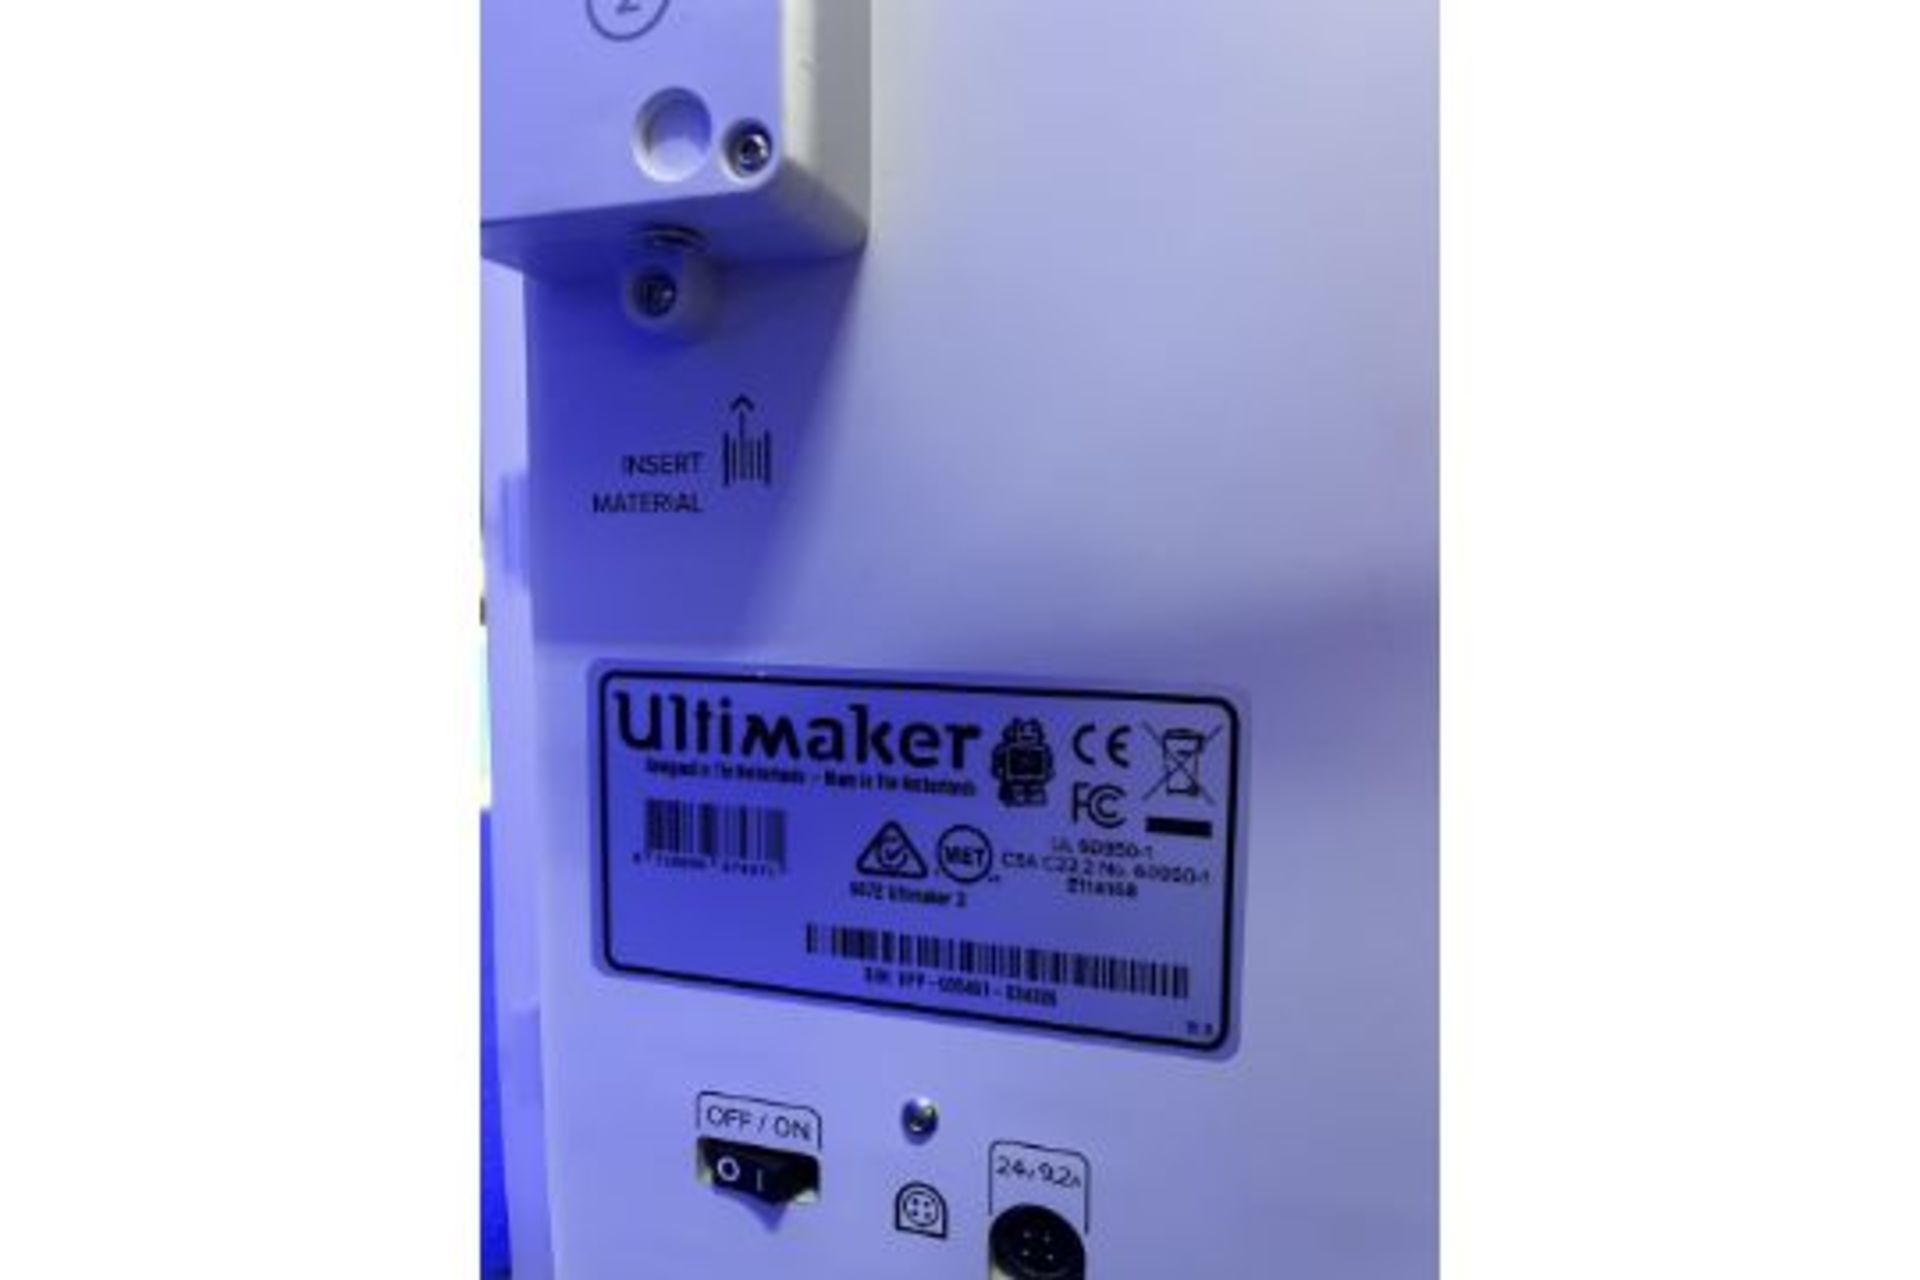 Ultimaker Model 3 3D printer - Image 4 of 4